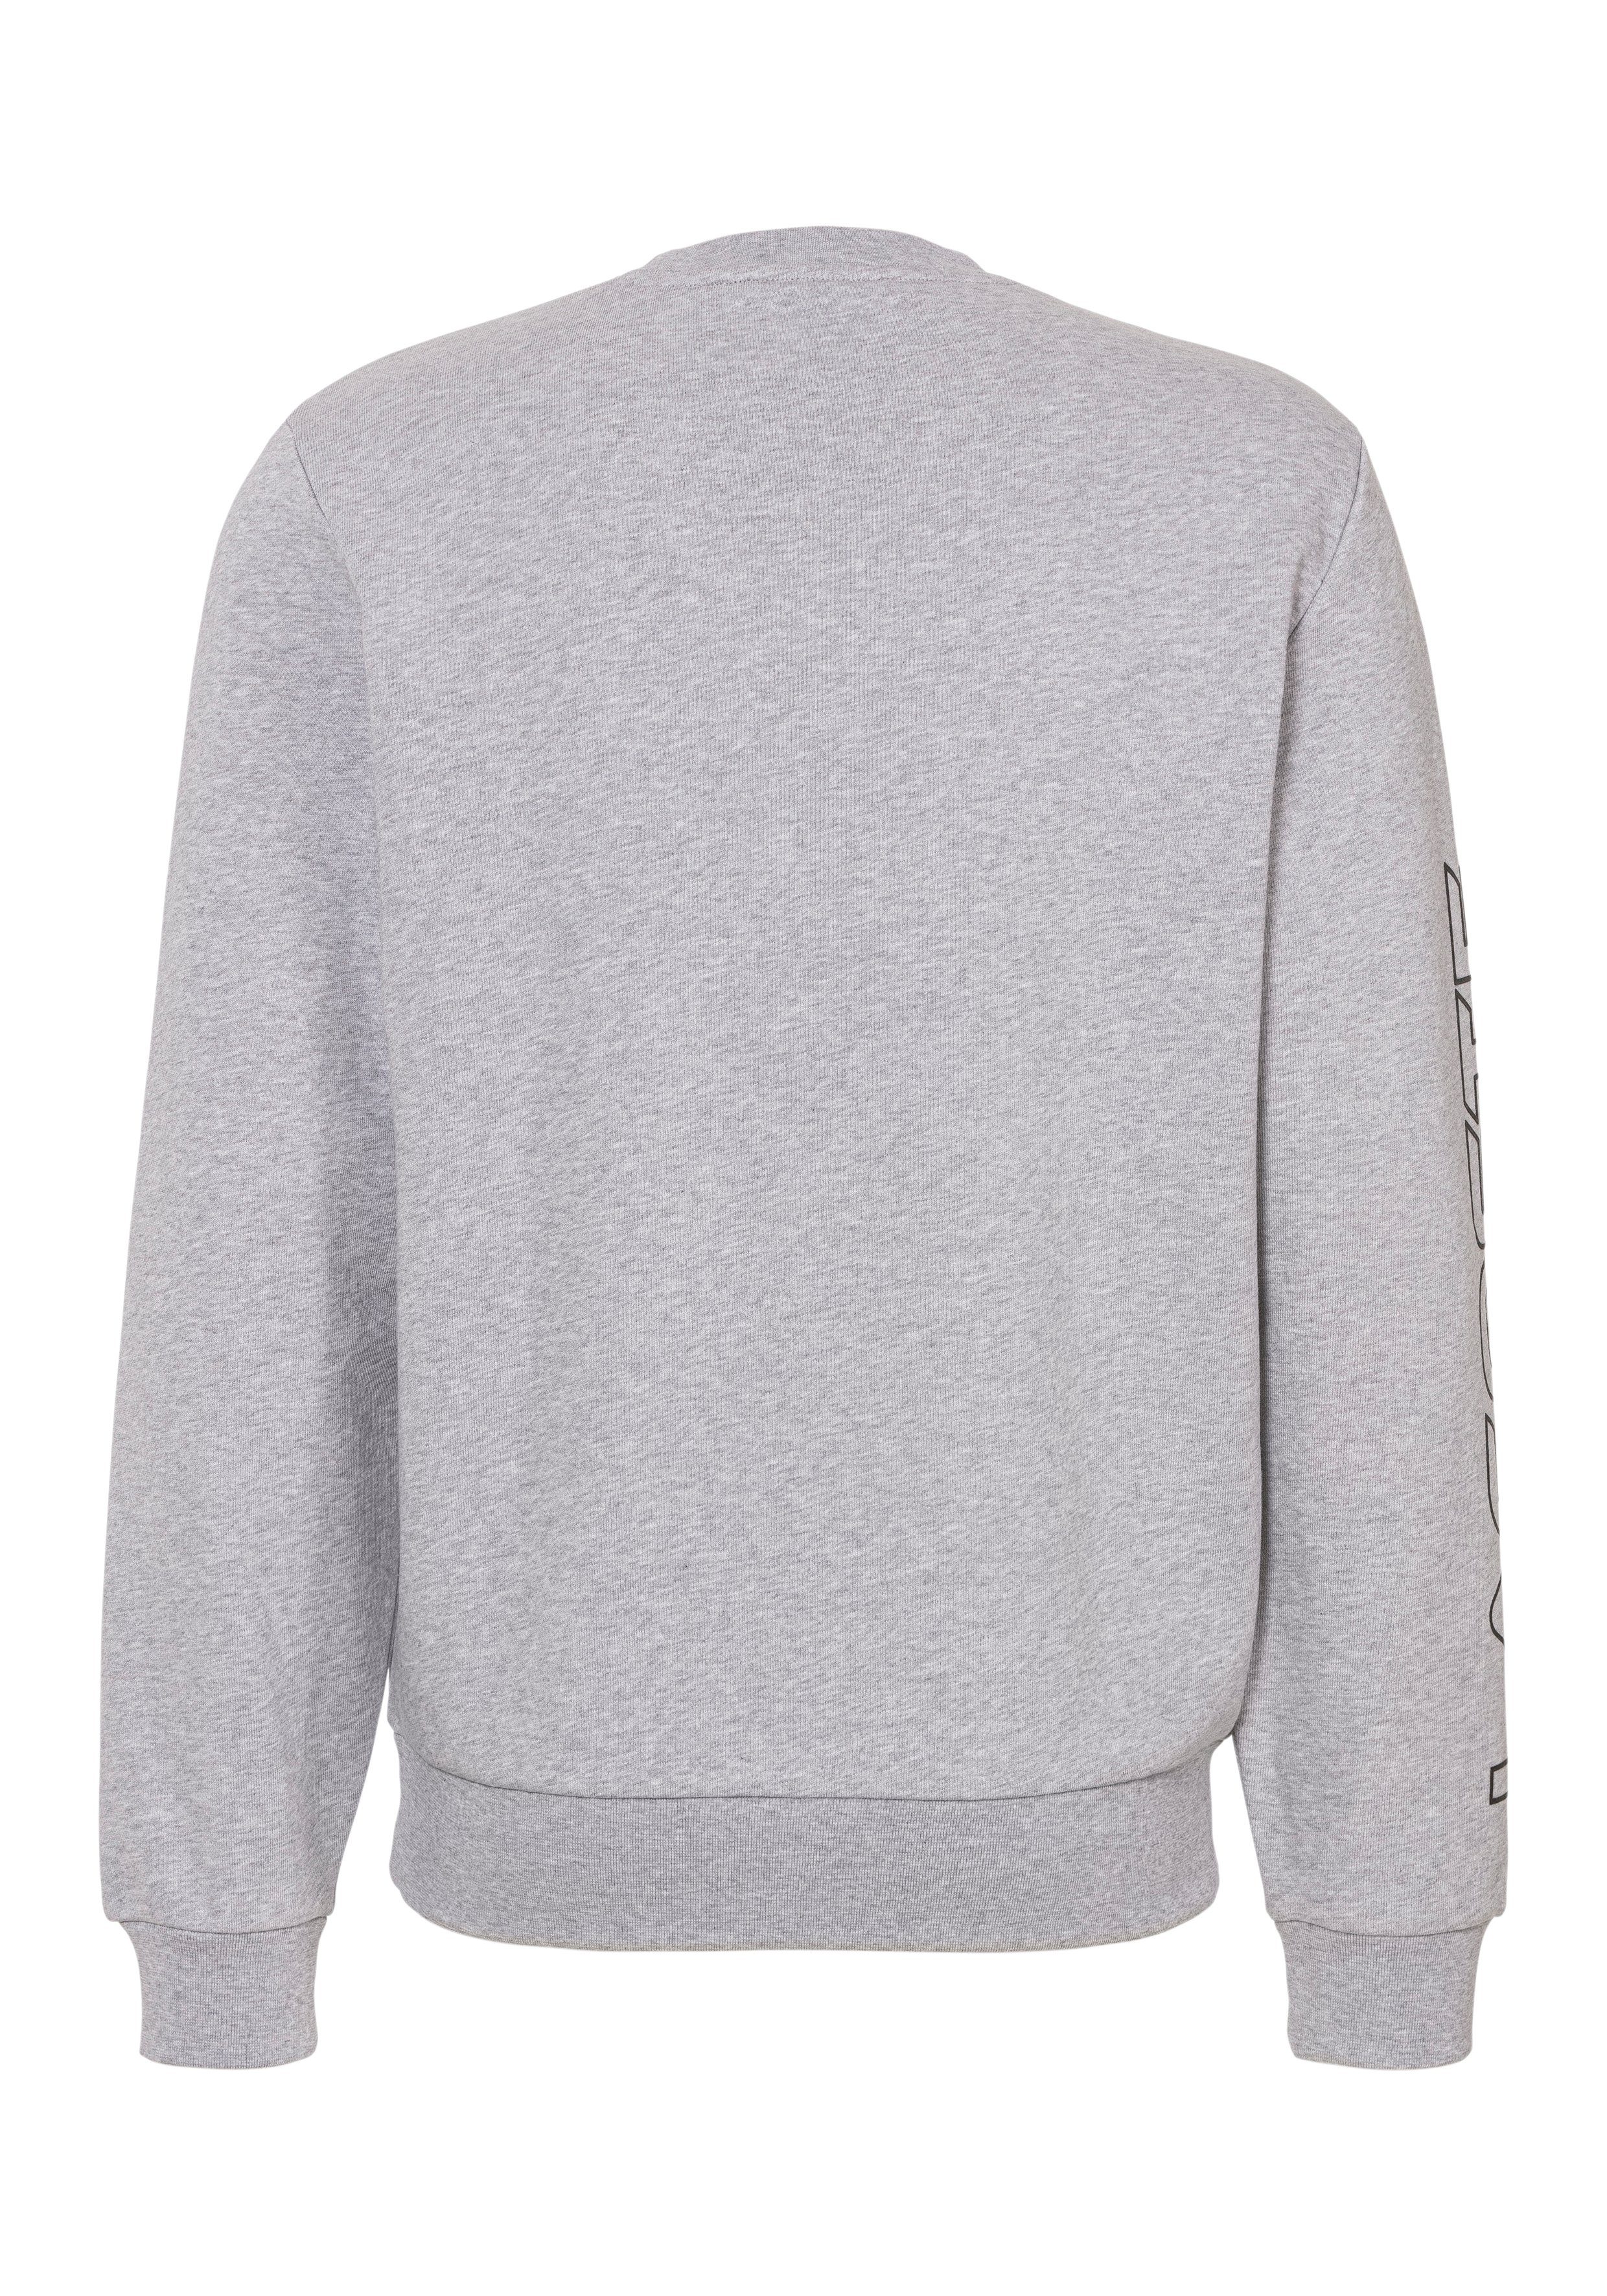 Sweatshirt grau mit modischem Lacoste dem Logoschriftzug SWEATSHIRT Ärmel auf